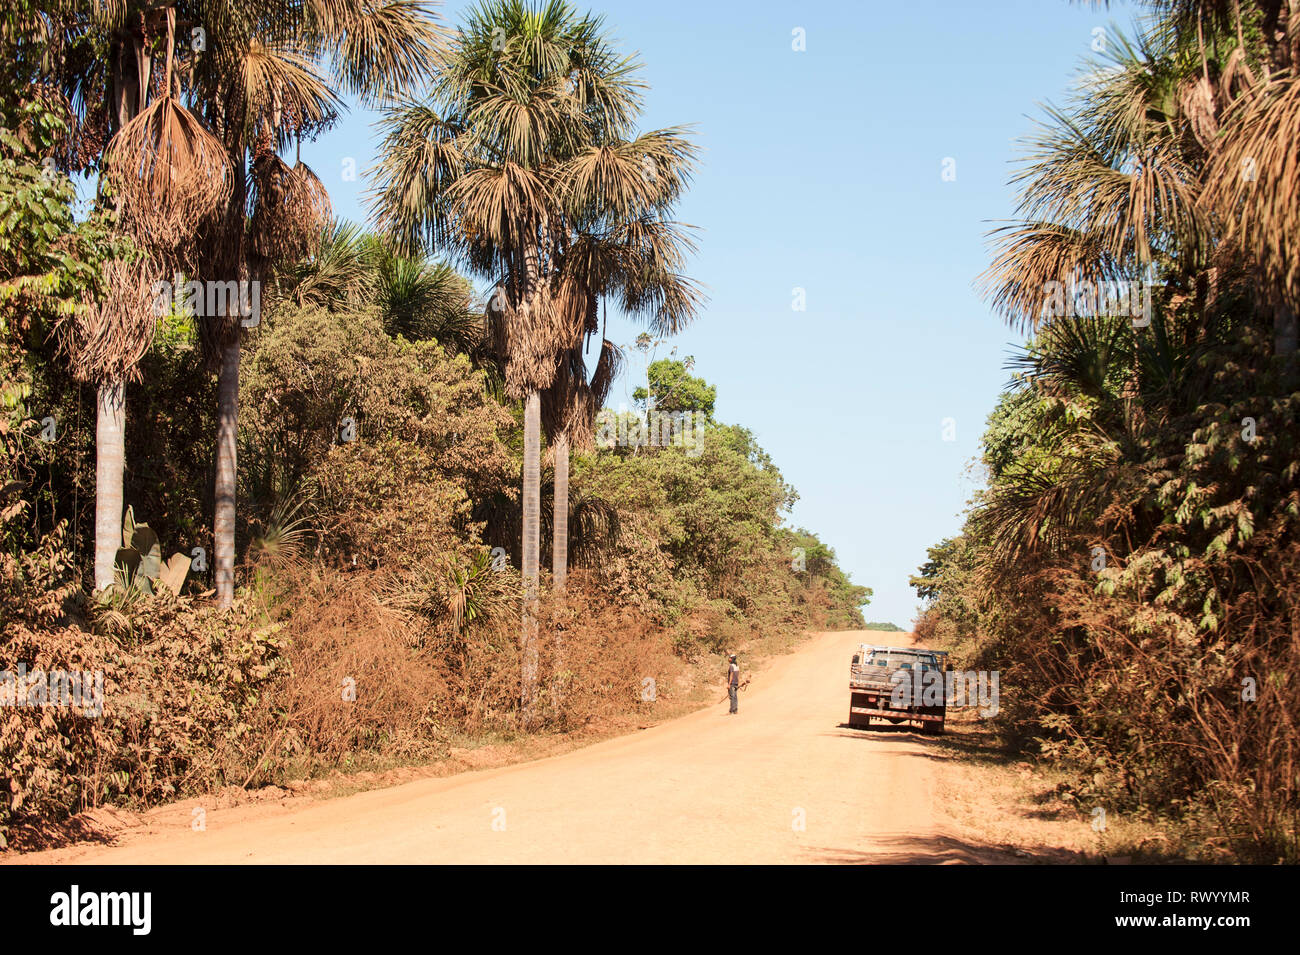 Mato Grosso Membro, Brasile. Un uomo con un fucile sta esaminando la foresta pluviale con accanto un piccolo carrello parcheggiato a fianco del MT322 strada sterrata. Foto Stock